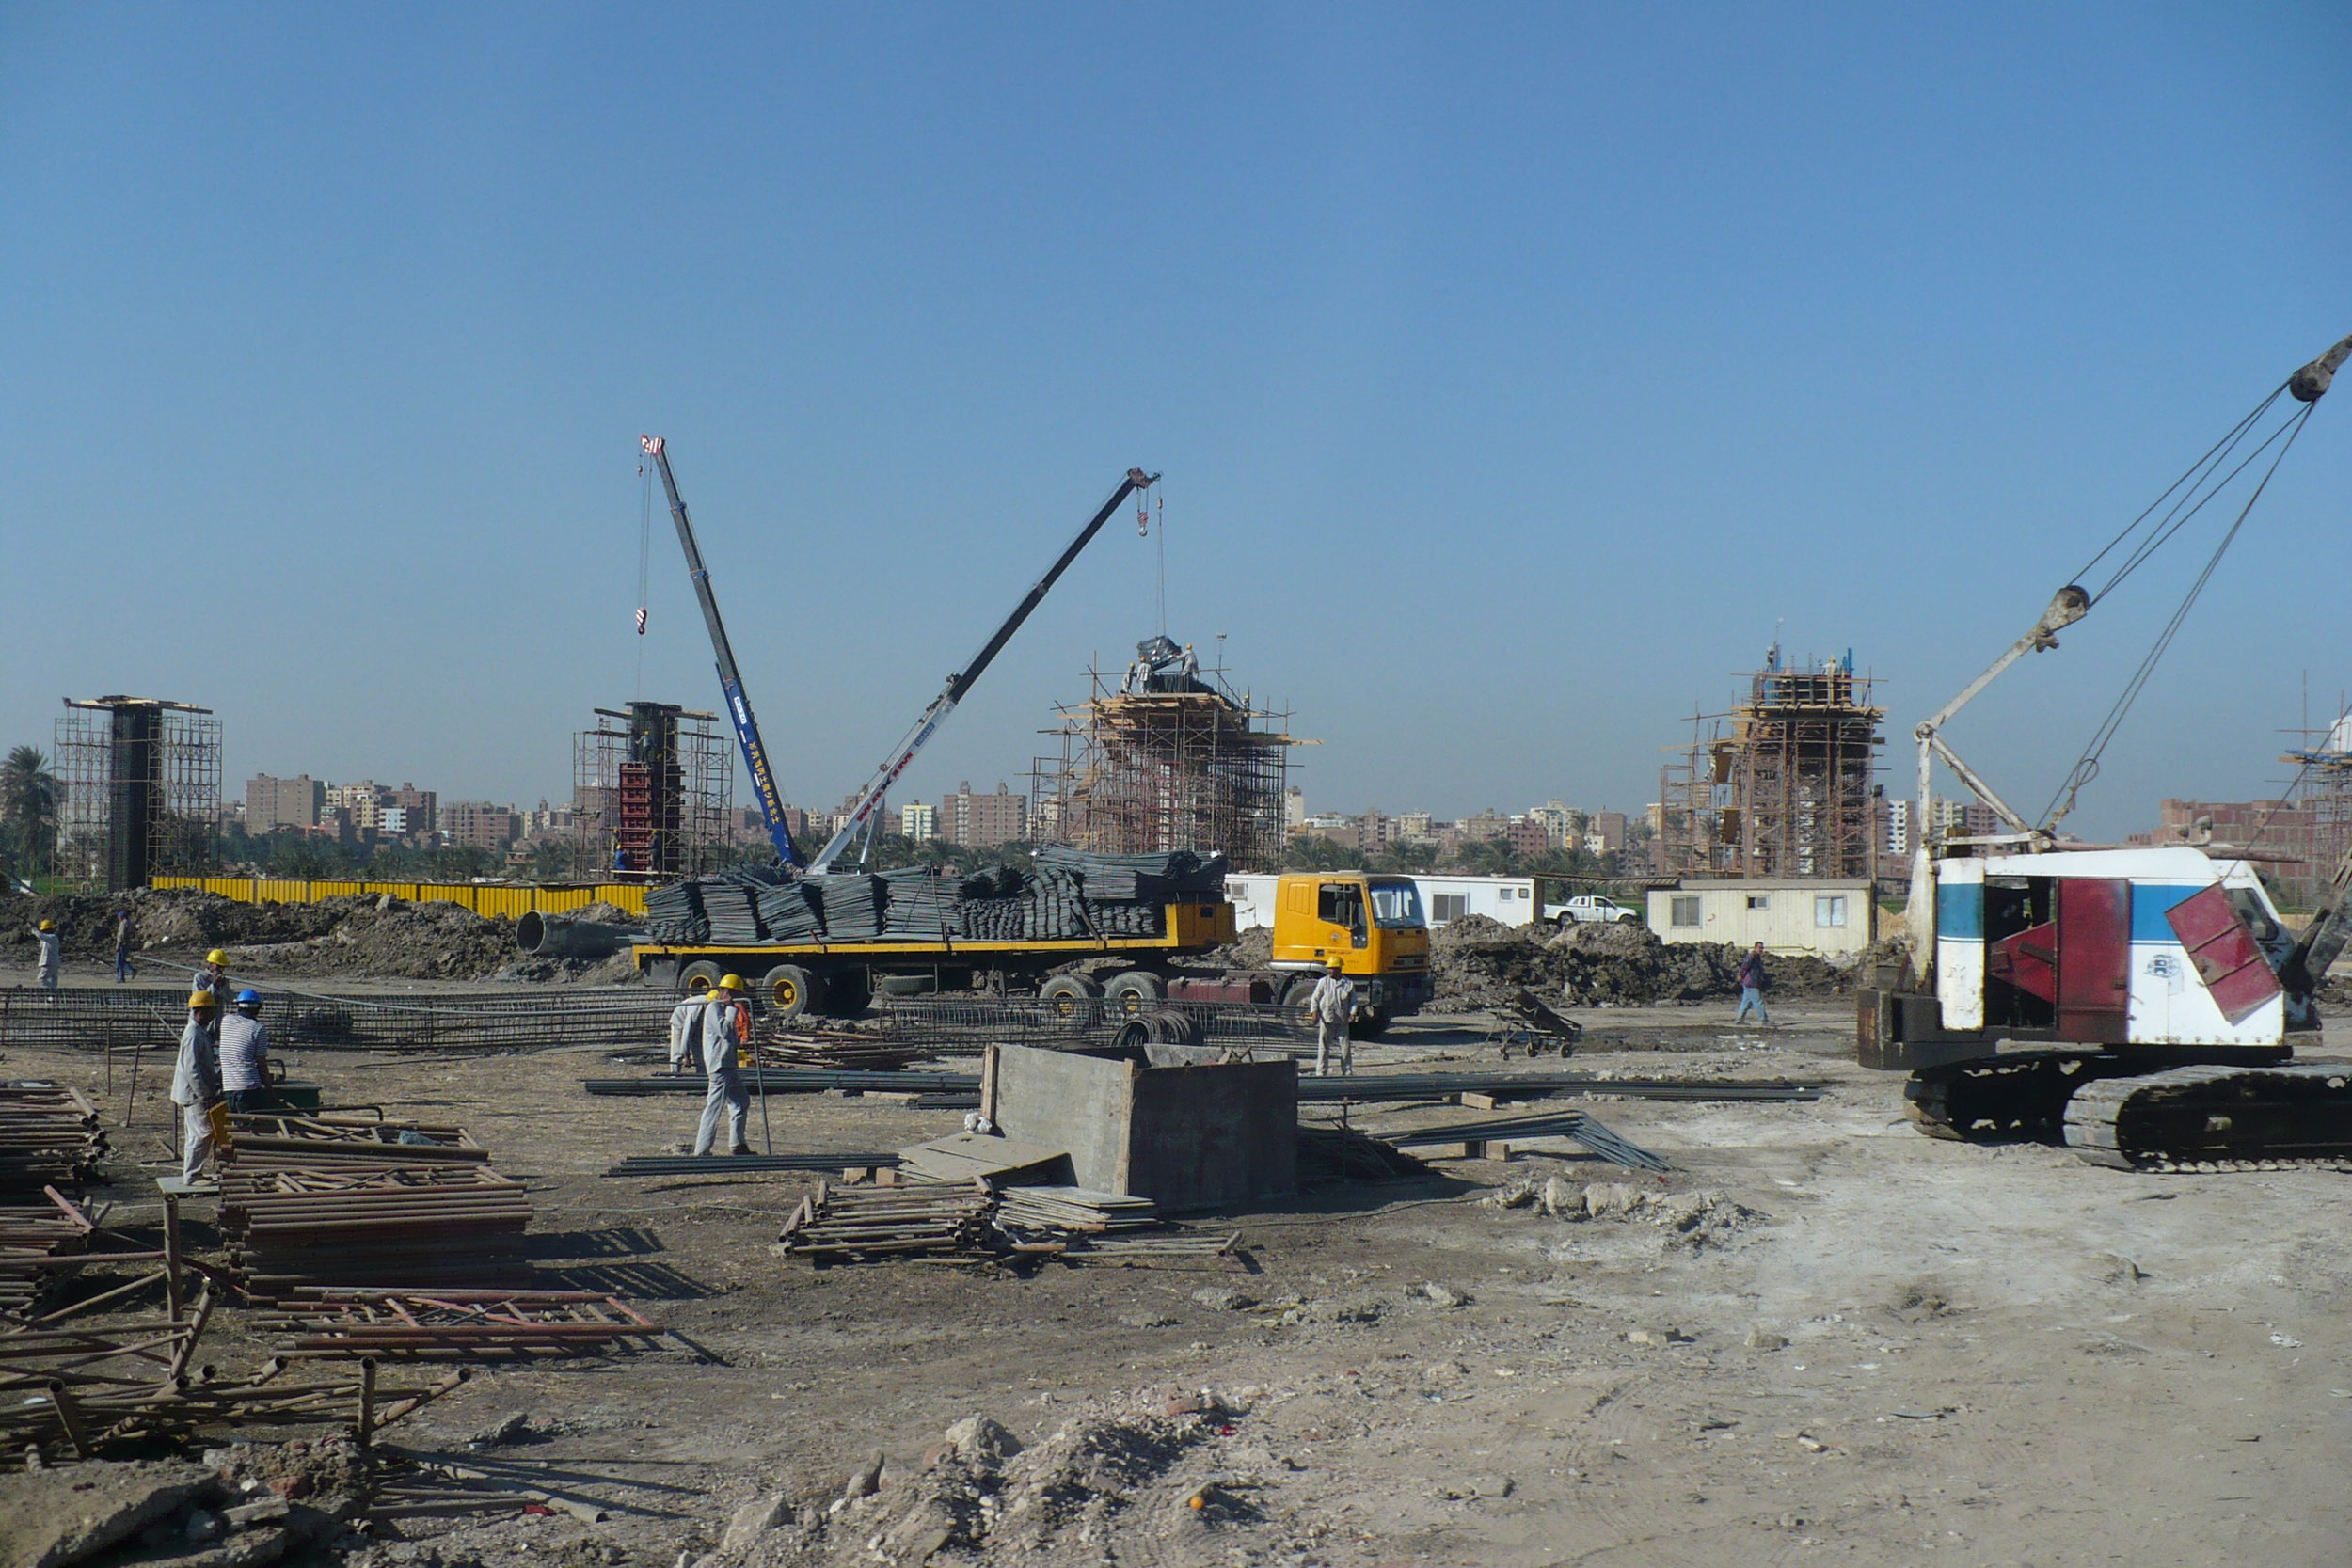 Cairo's development